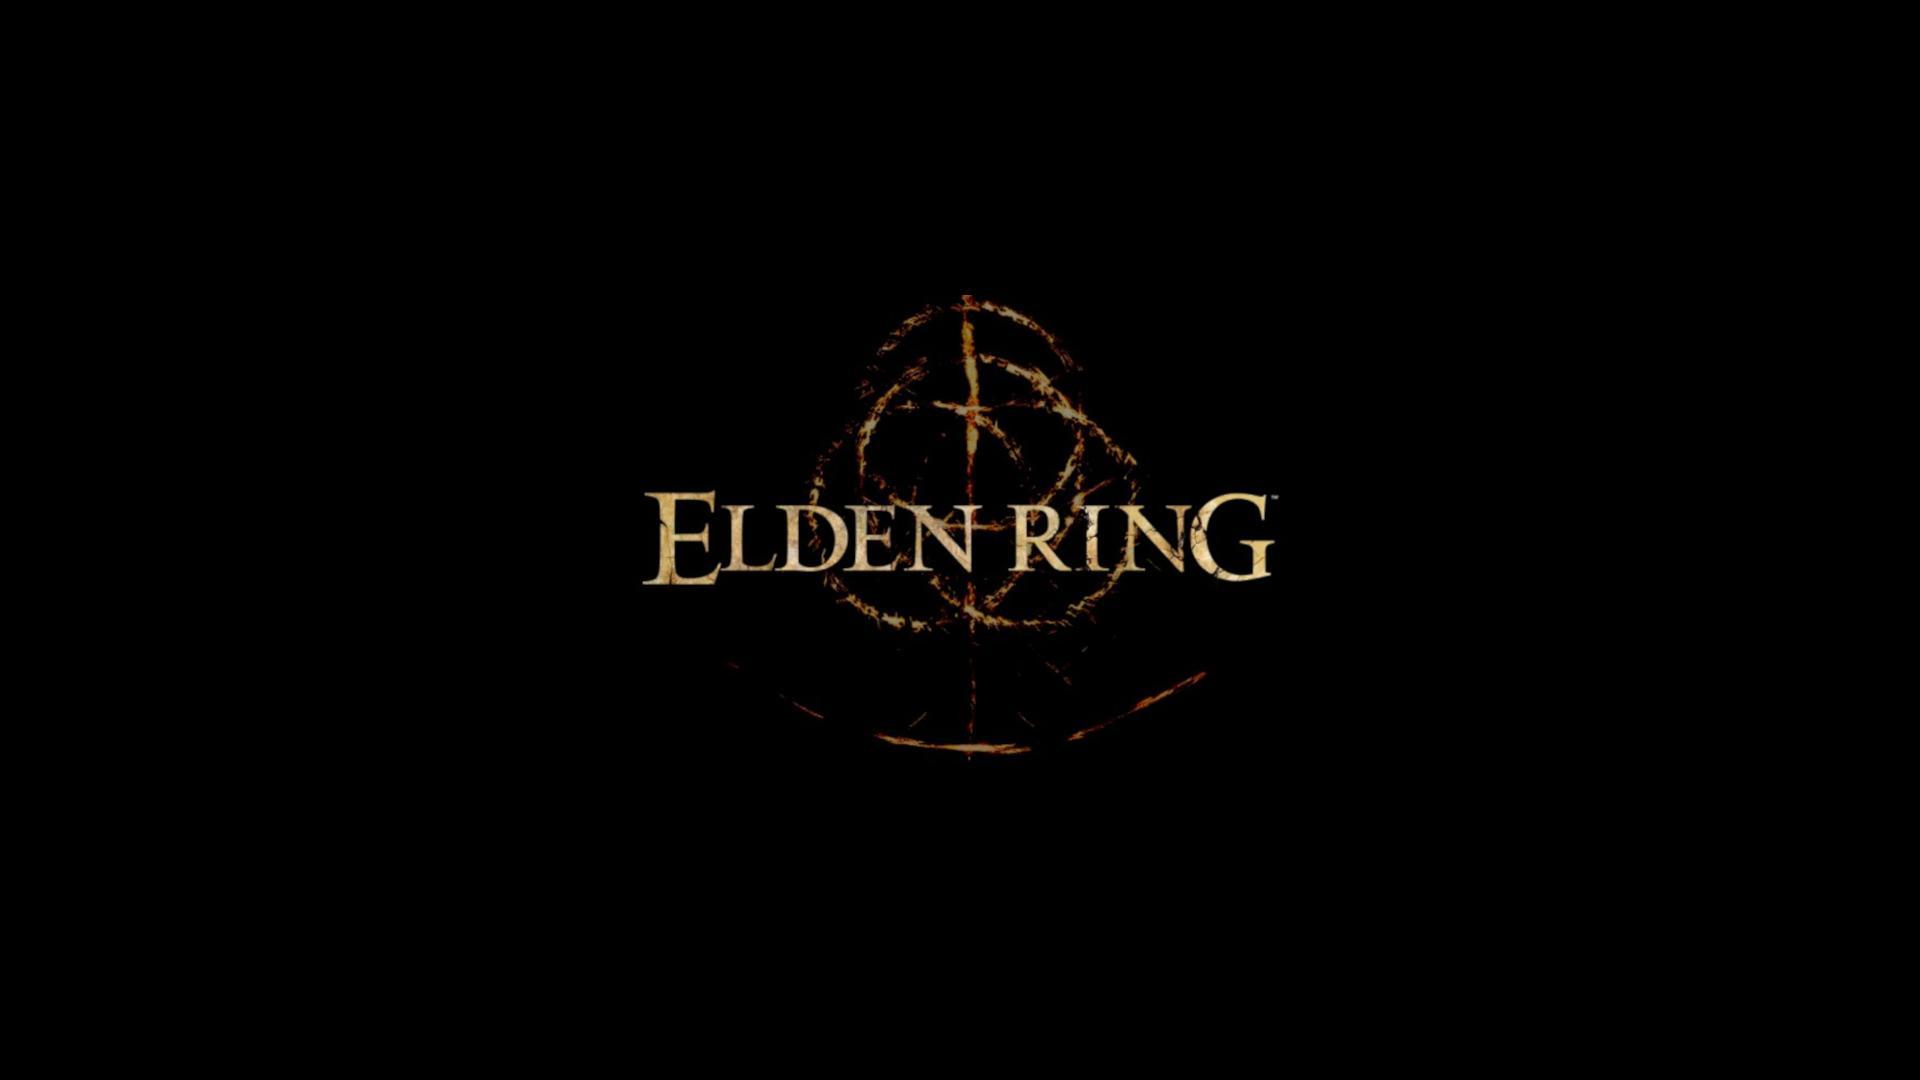 Elden Ring wallpaper by Is_Mehrdad - Download on ZEDGE™